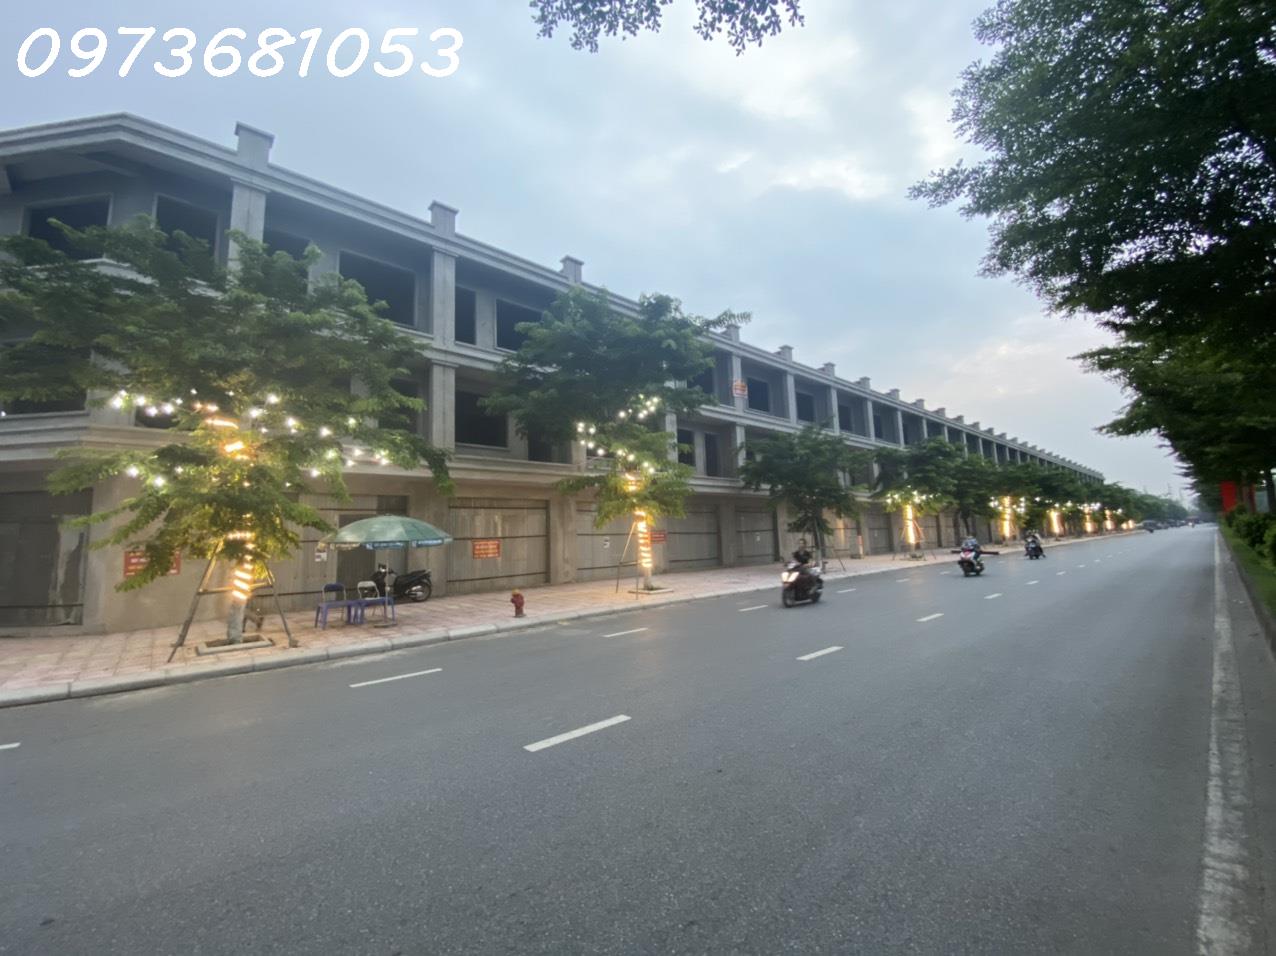 Bán nhà 4 tầng dự án Đại An Phù Khê Từ Sơn Bắc Ninh - Ảnh 1